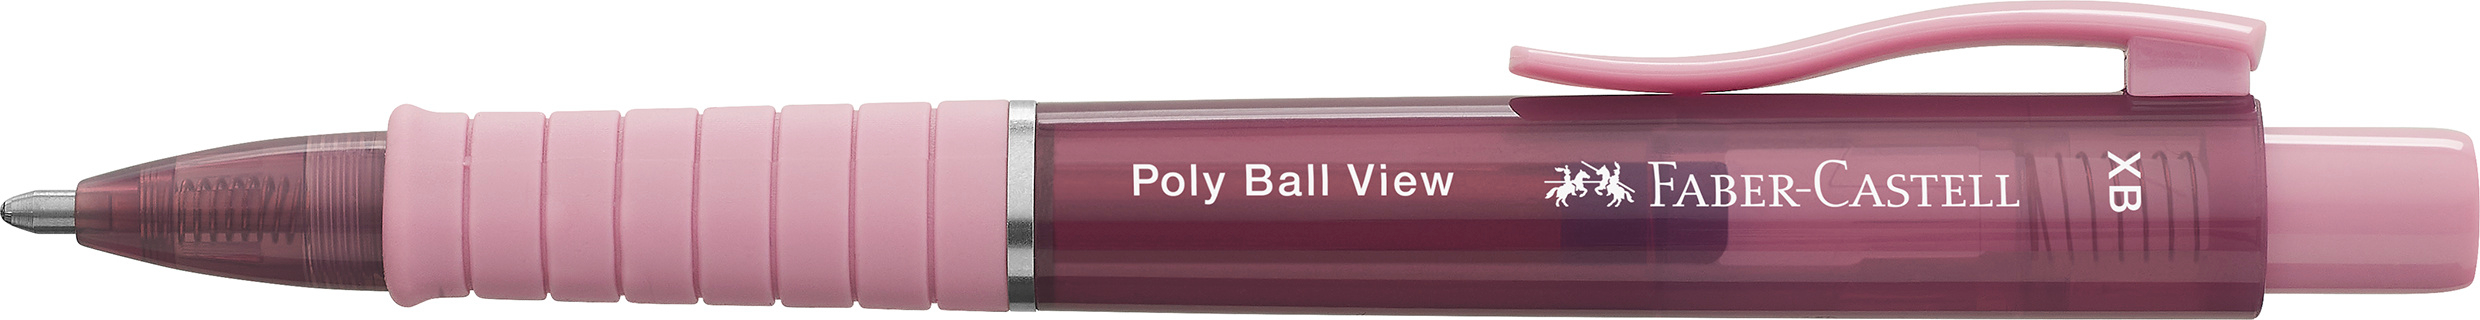 FABER-CASTELL Kugelschreiber Poly Ball View 145753 Rose shadows XB